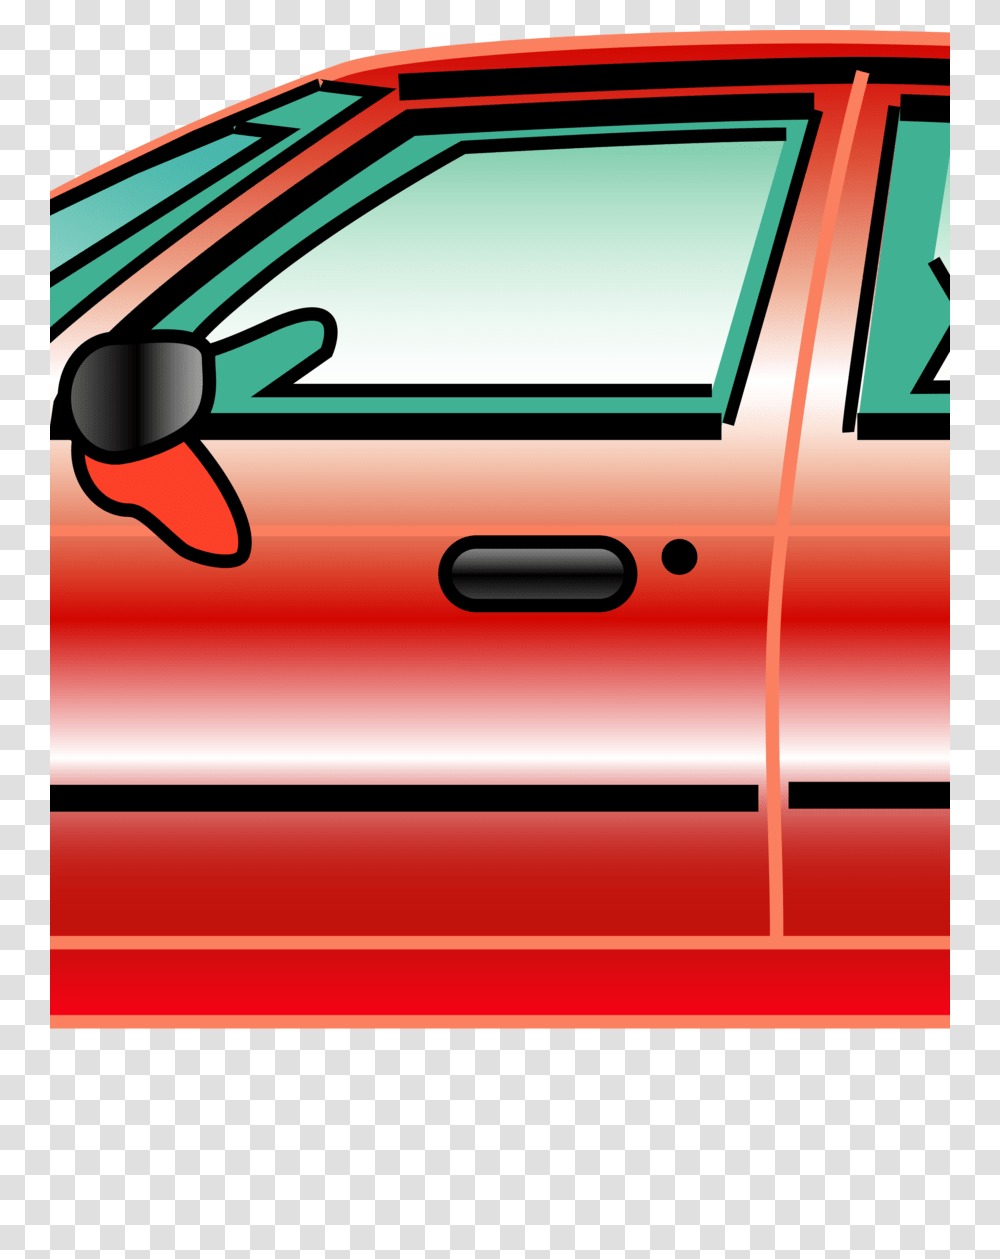 Download Metal Zipper Clipart Car Auto Clip Art Carred, Transportation, Vehicle, Tire, Car Wheel Transparent Png